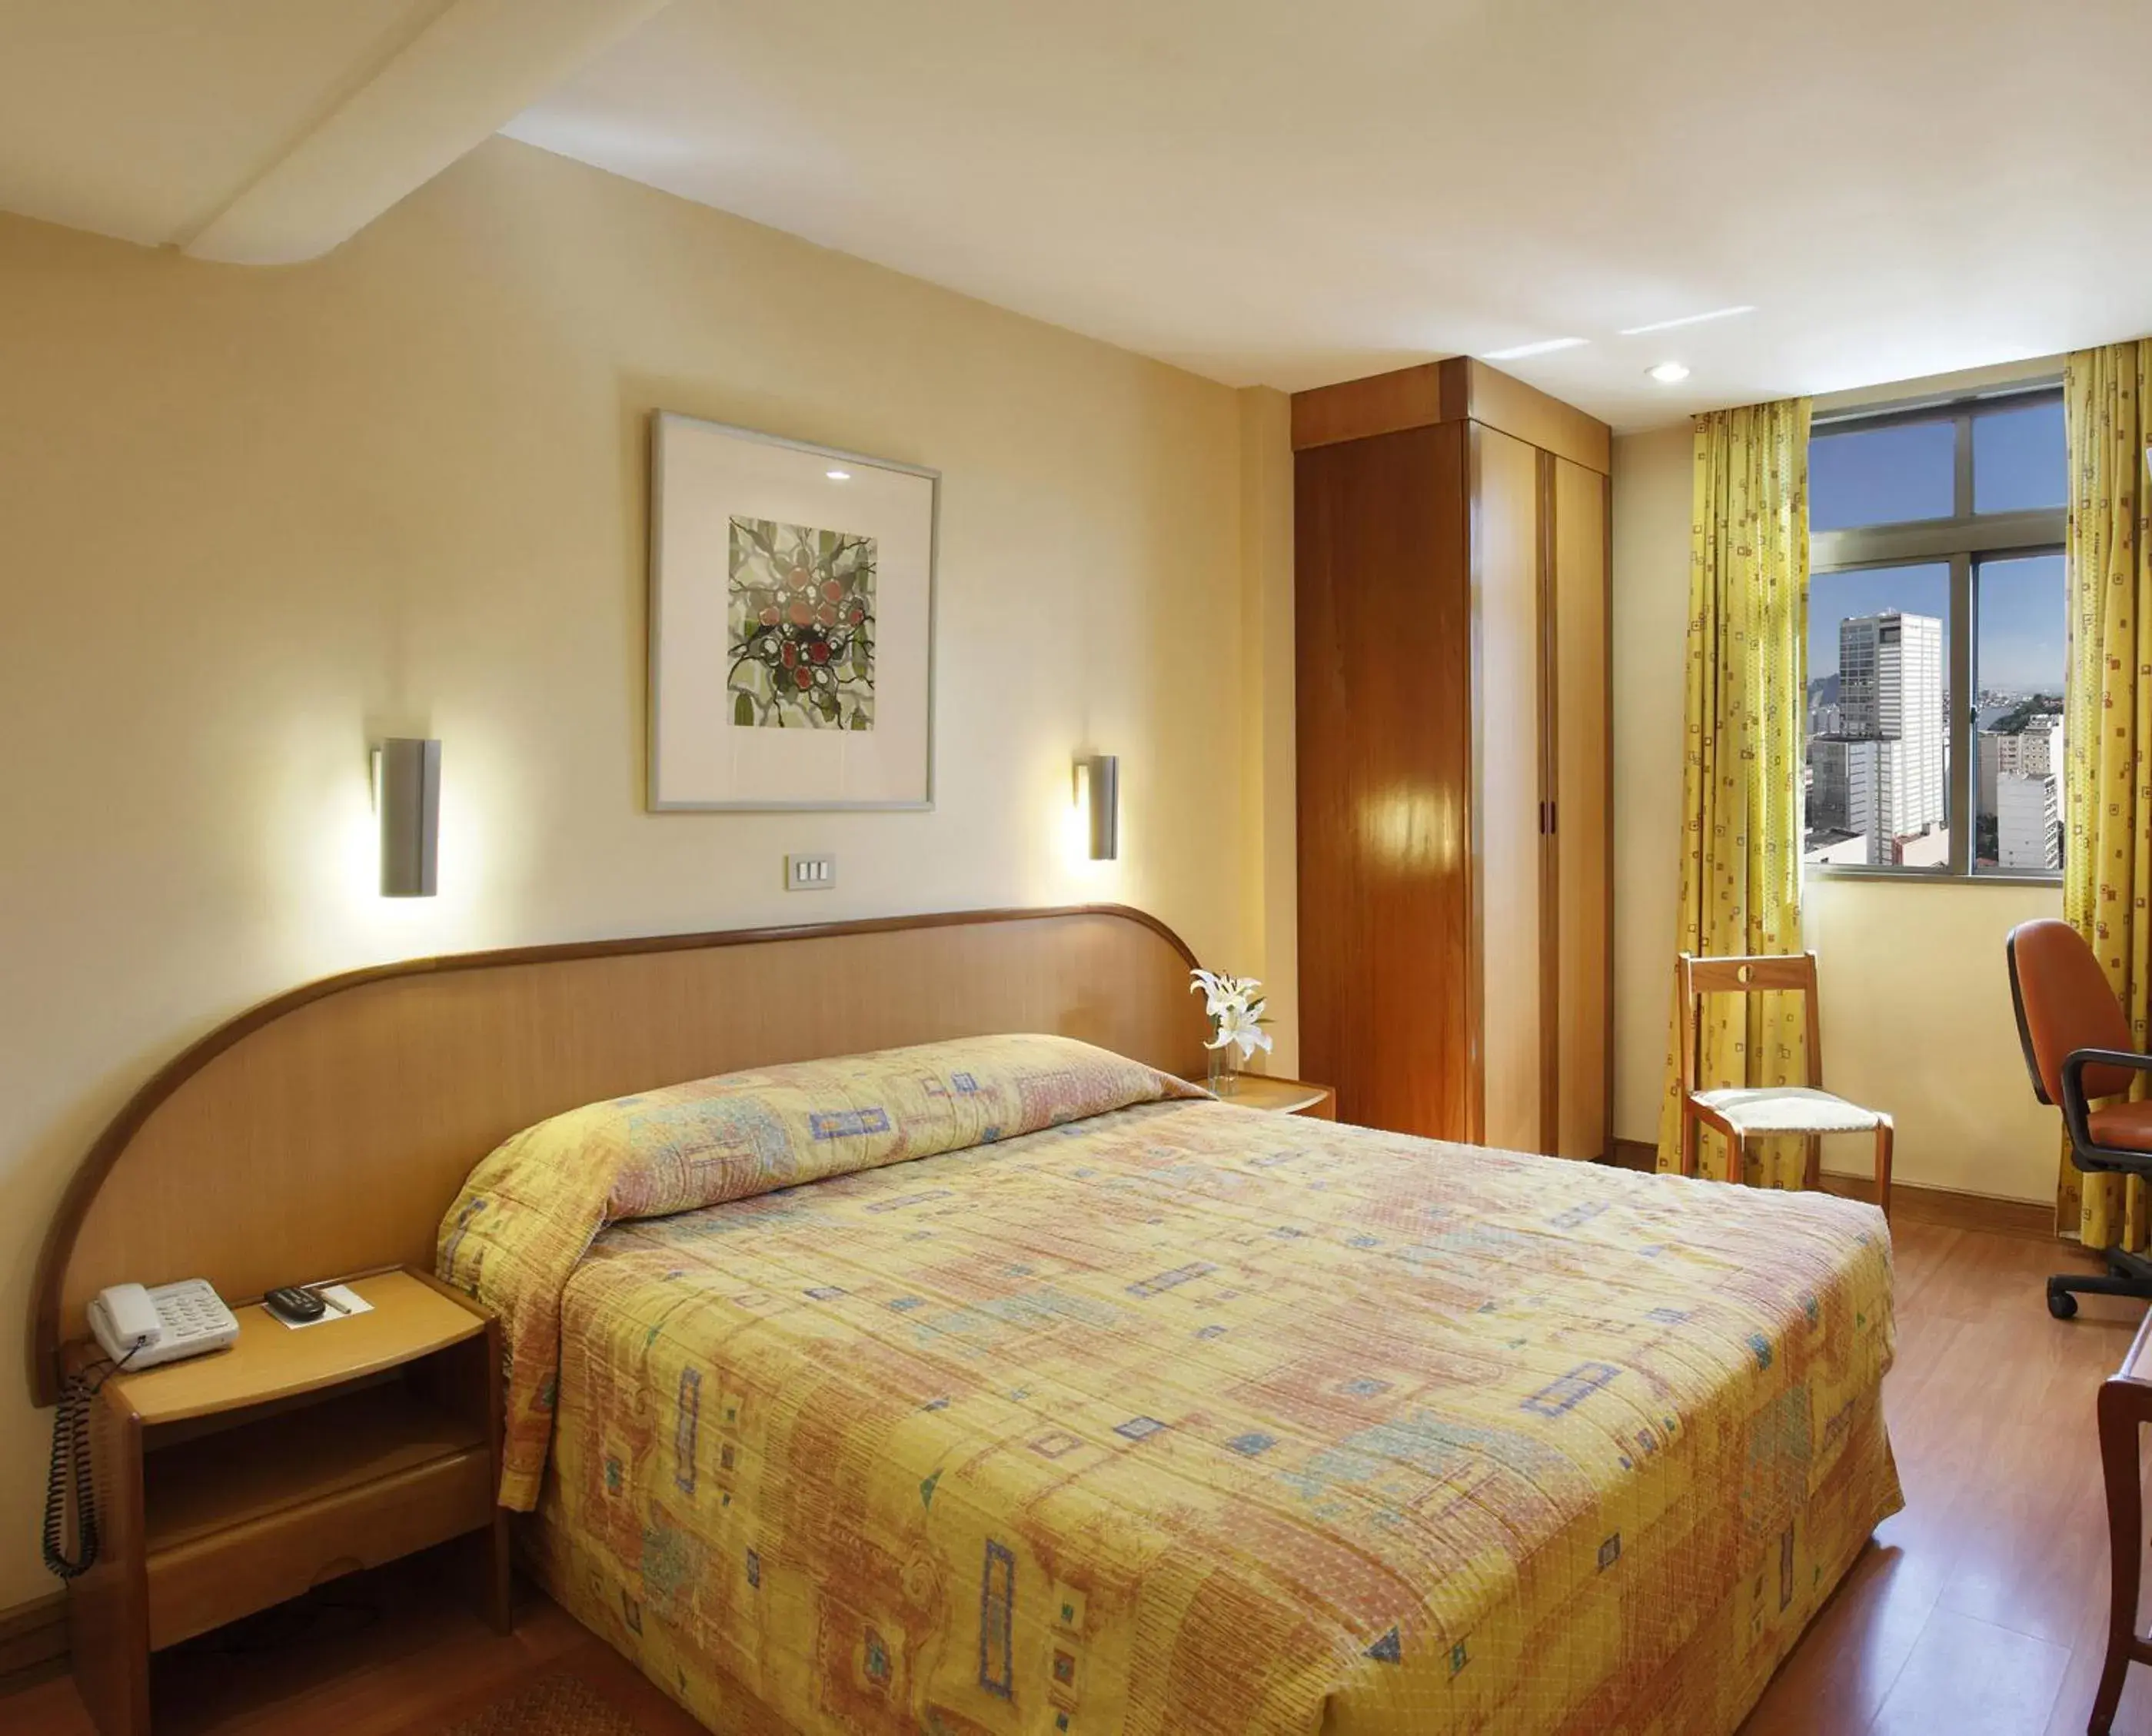 Bedroom in Windsor Guanabara Hotel